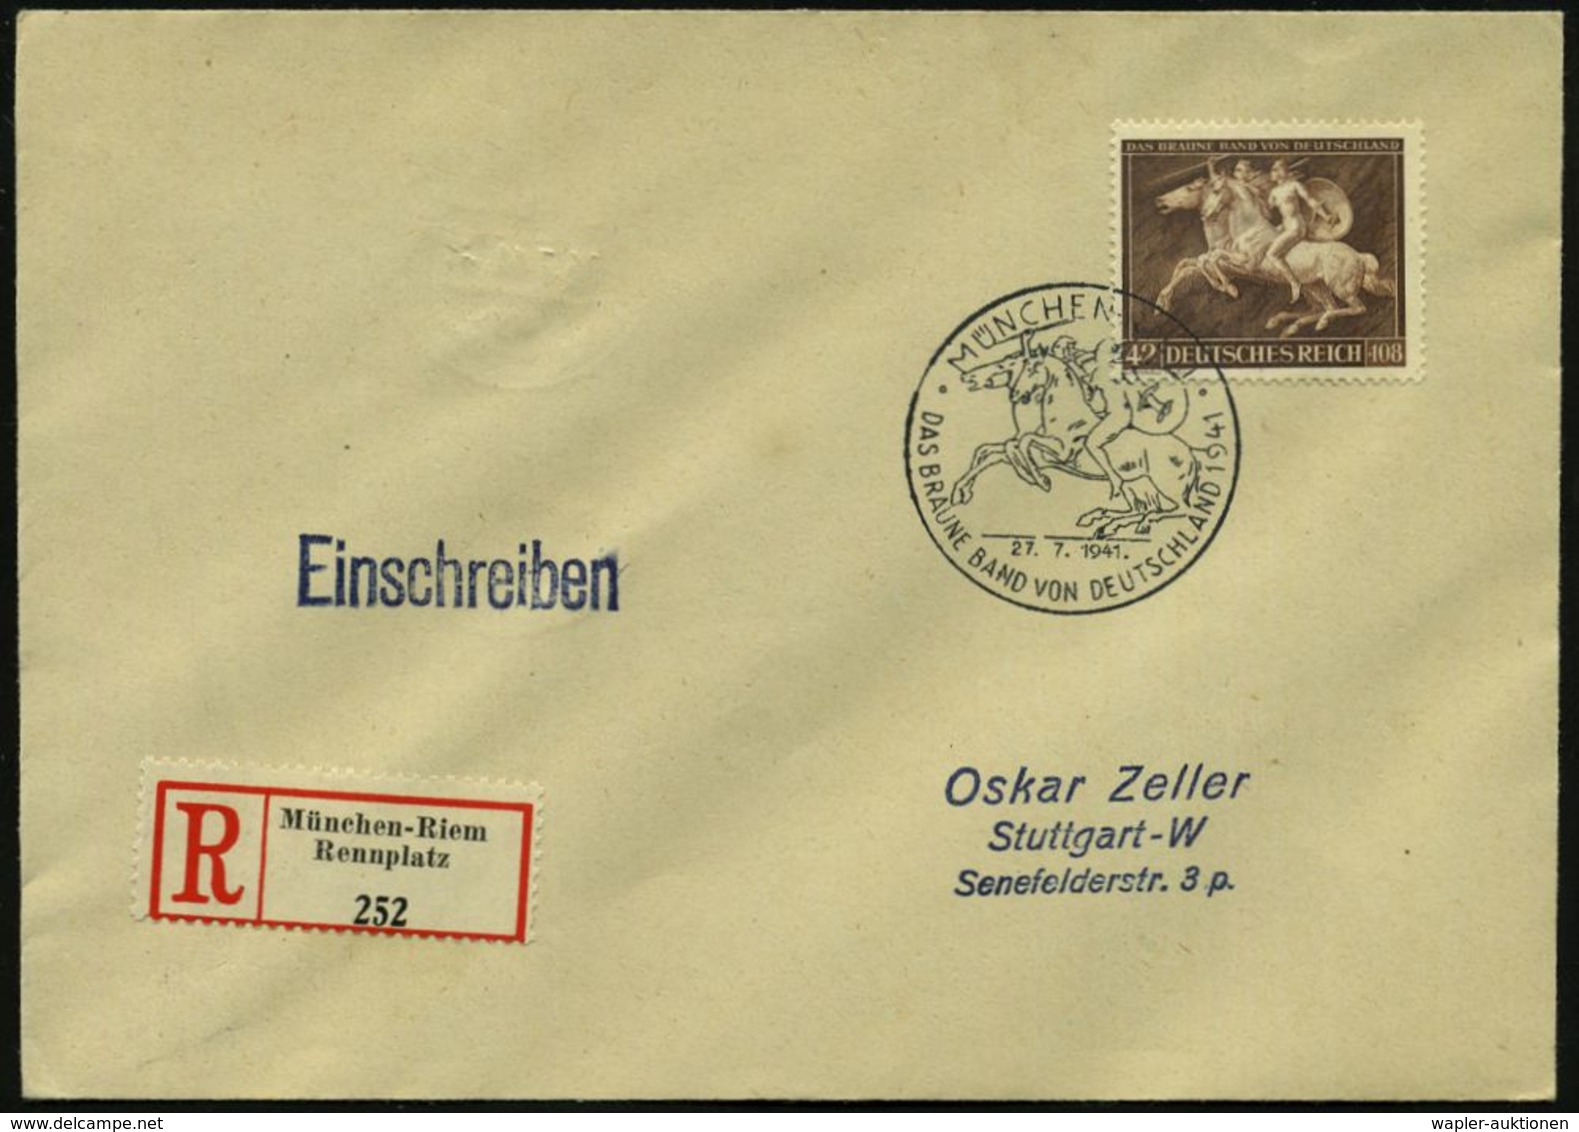 ANTIKES GRIECHENLAND : MÜNCHEN-RIEM/ DAS BRAUNE BAND VON DEUTSCHLAND 1941 (27.7.) SSt = 2 Amazonen Zu Pferd Auf Motivgl. - Archeologia